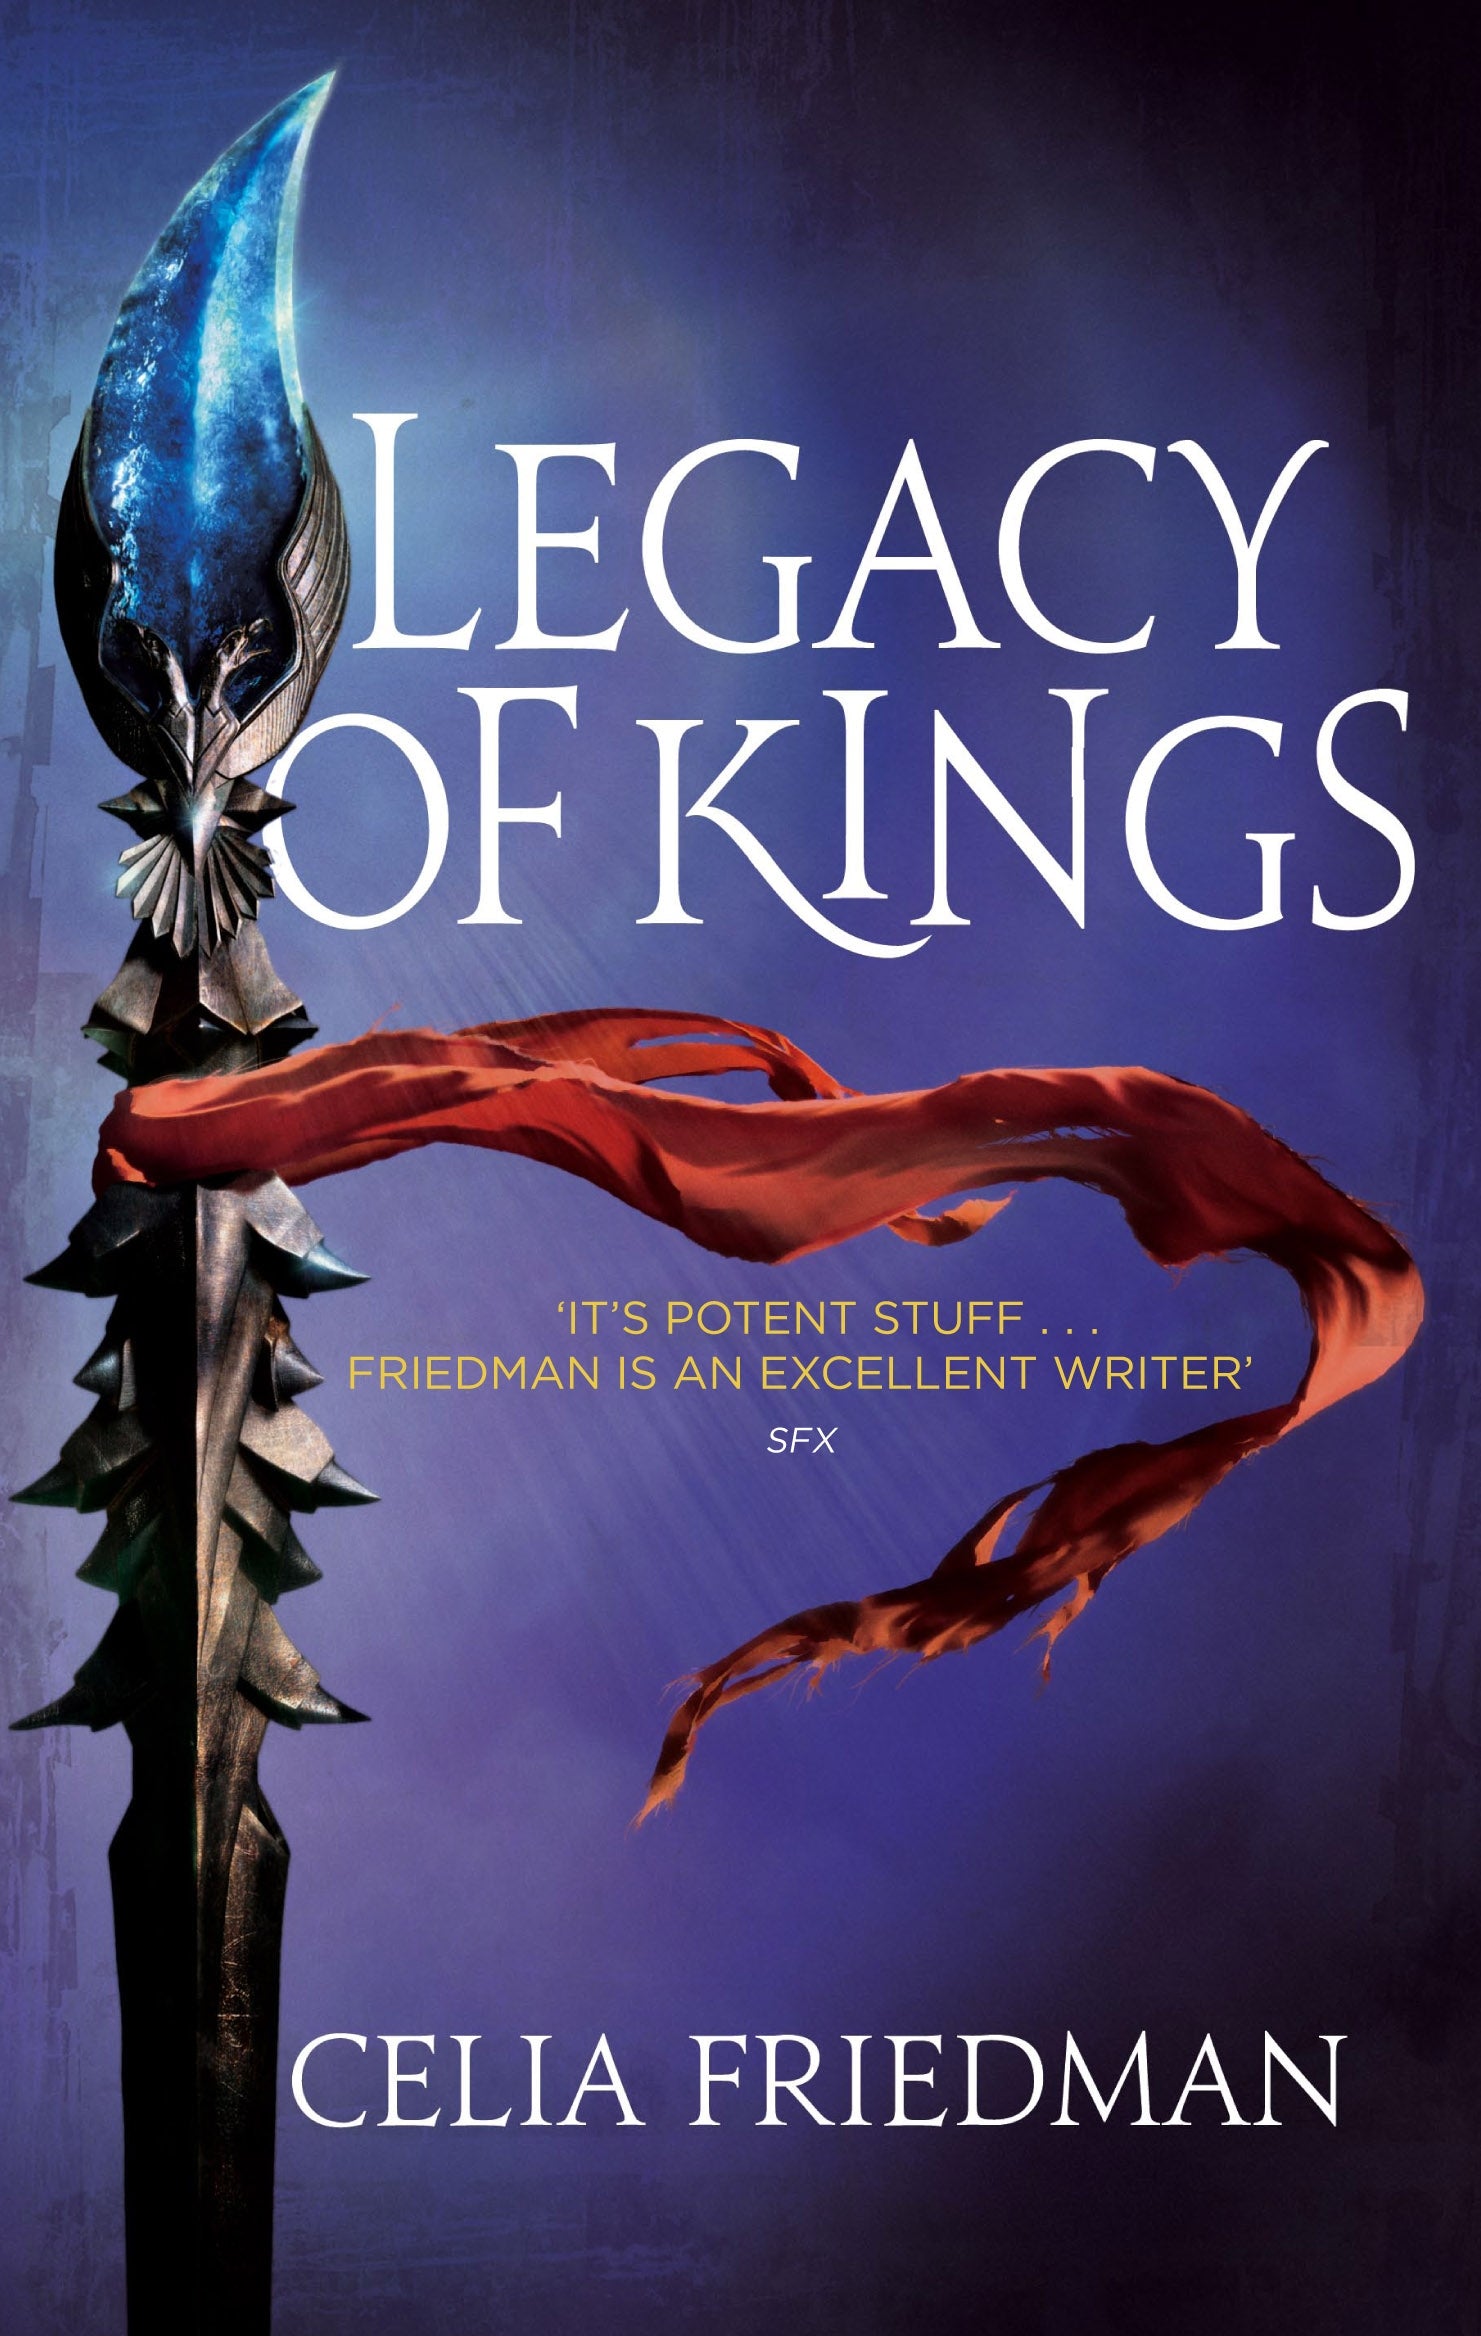 Legacy Of Kings by Celia Friedman